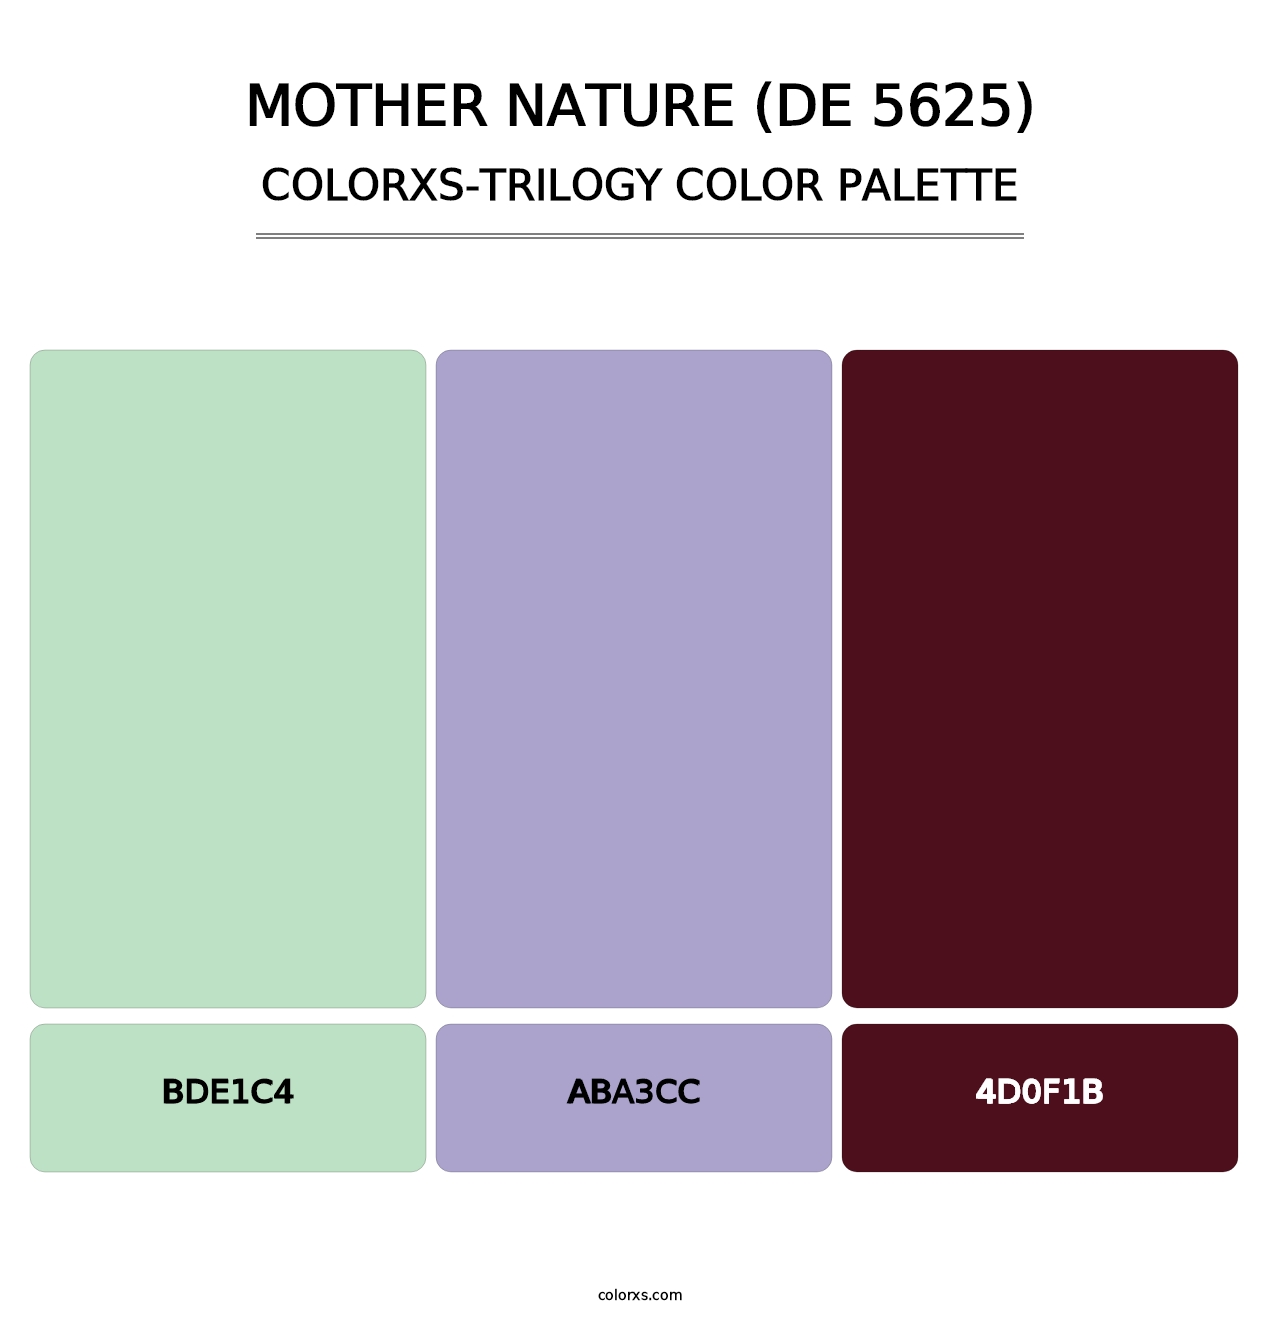 Mother Nature (DE 5625) - Colorxs Trilogy Palette